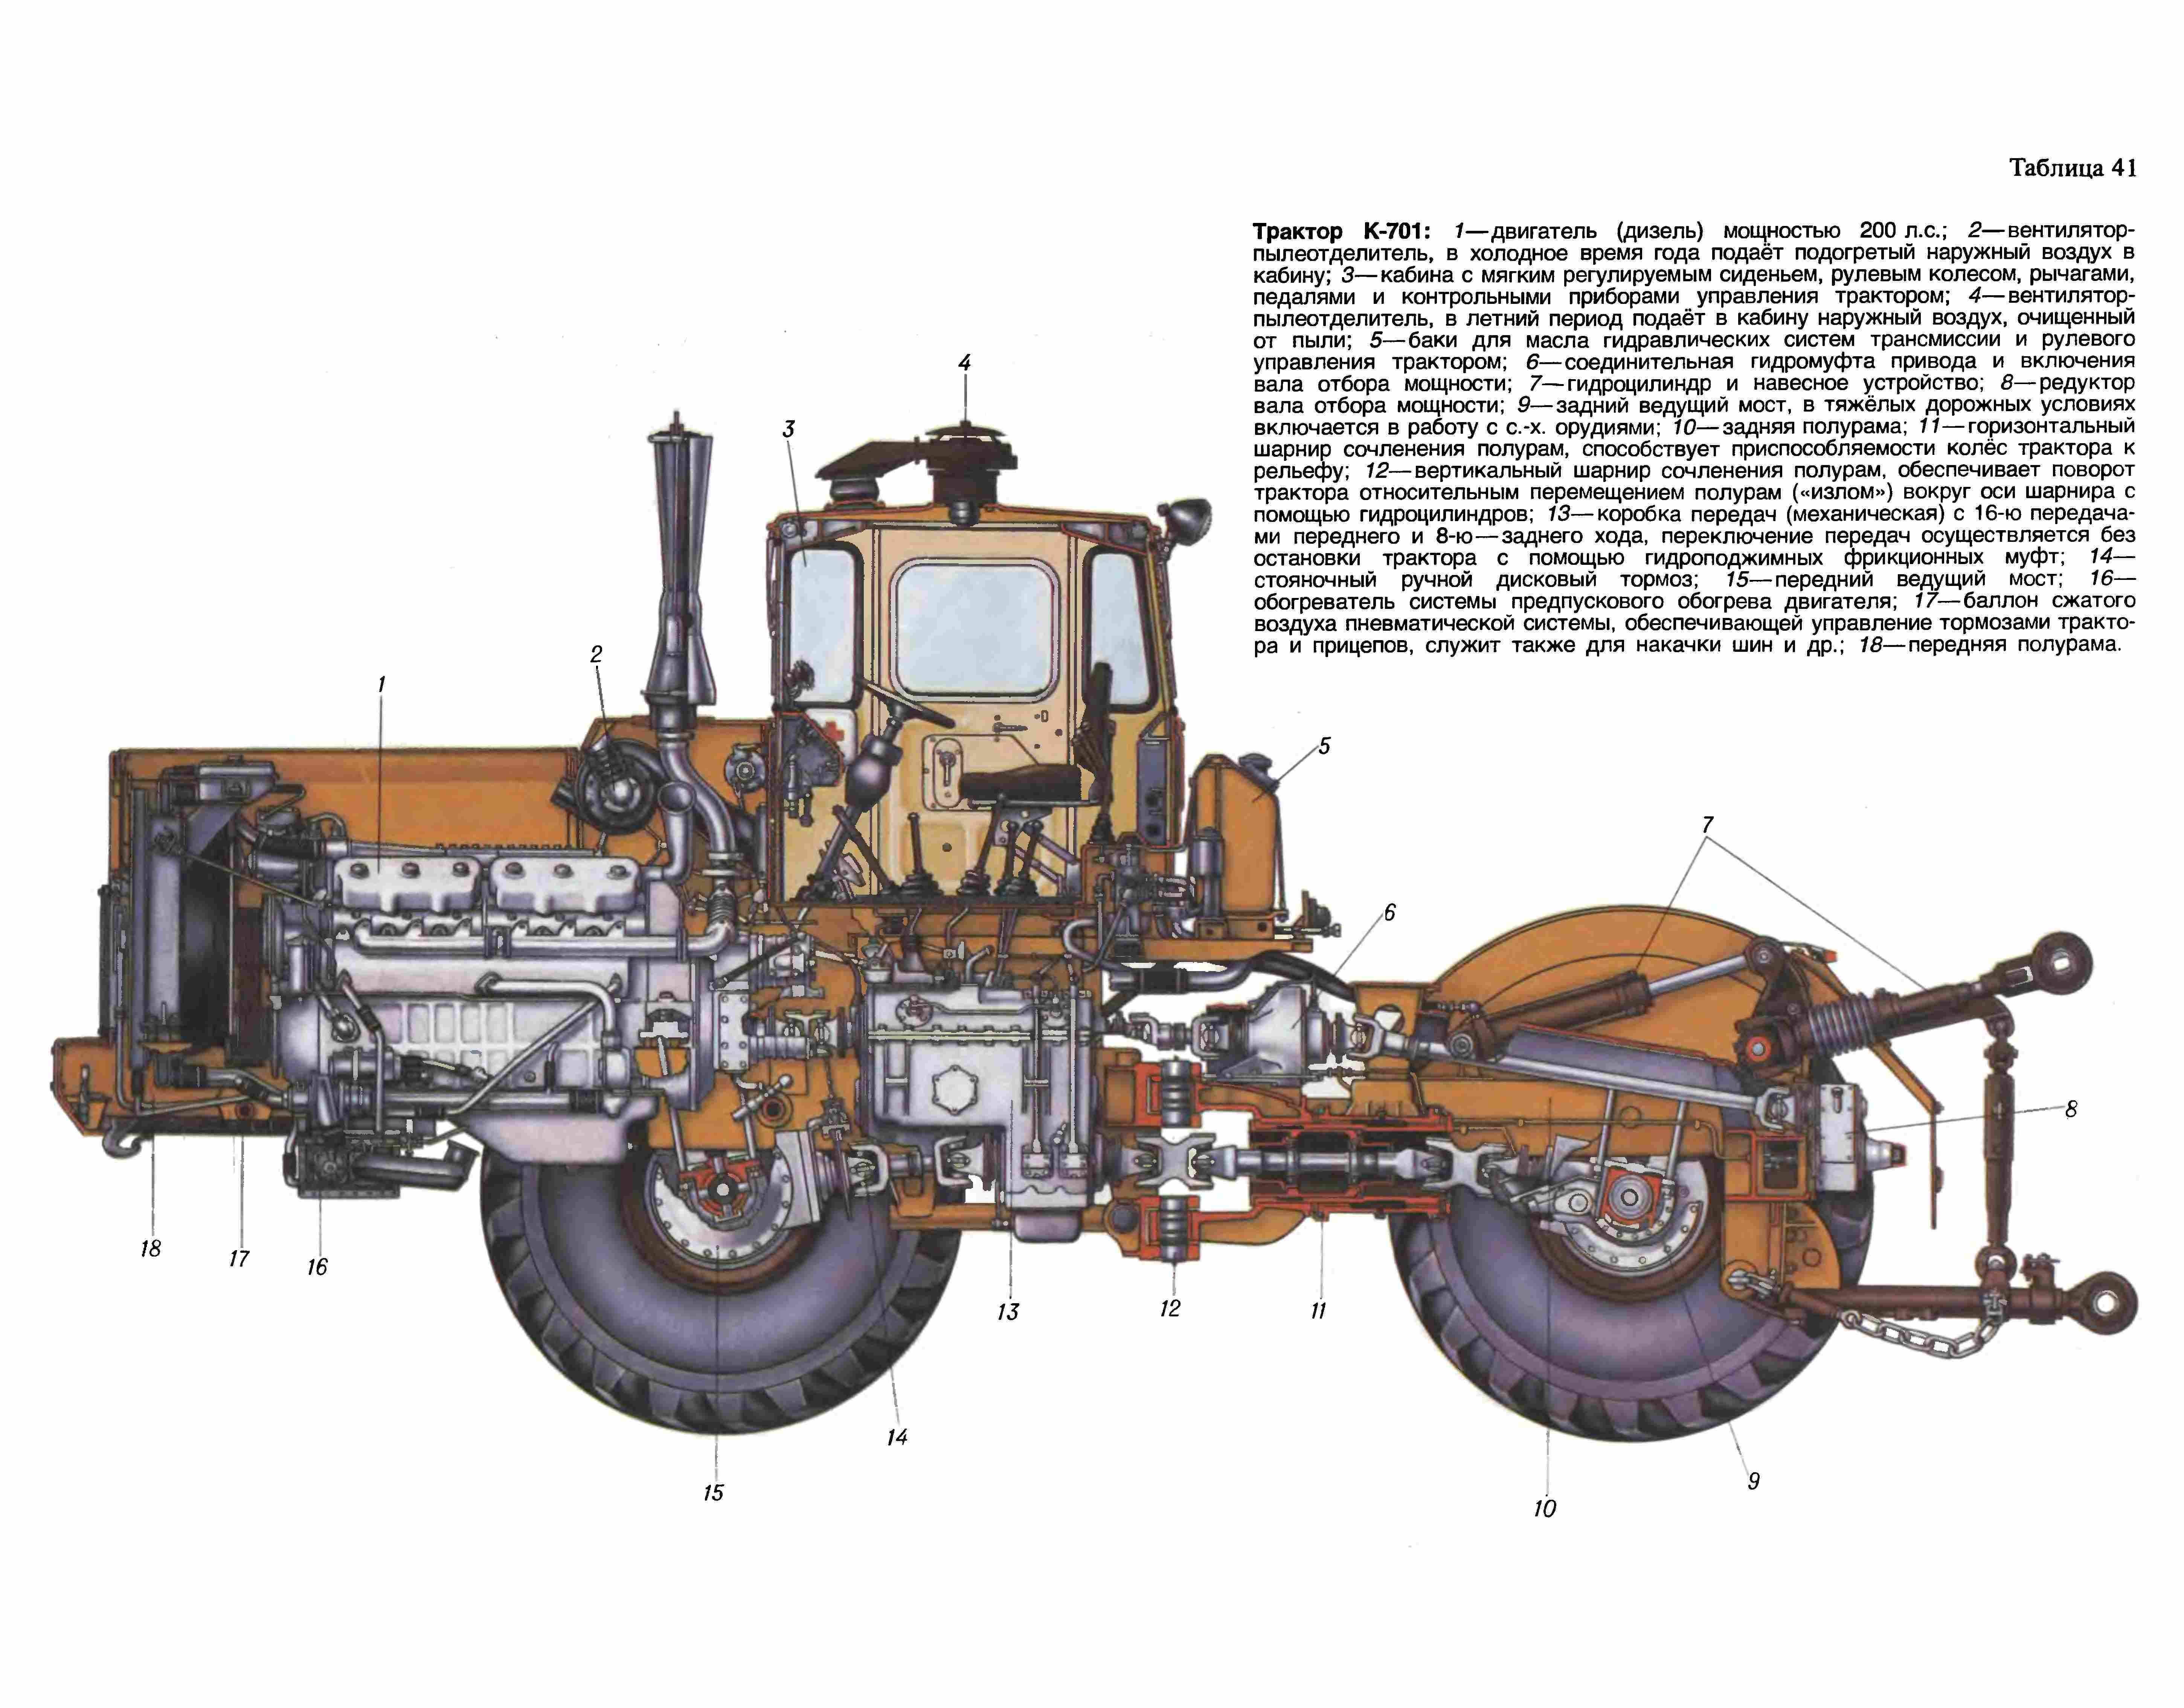 Трактор к-701 — второе поколение тяжелых машин для сельского хозяйства